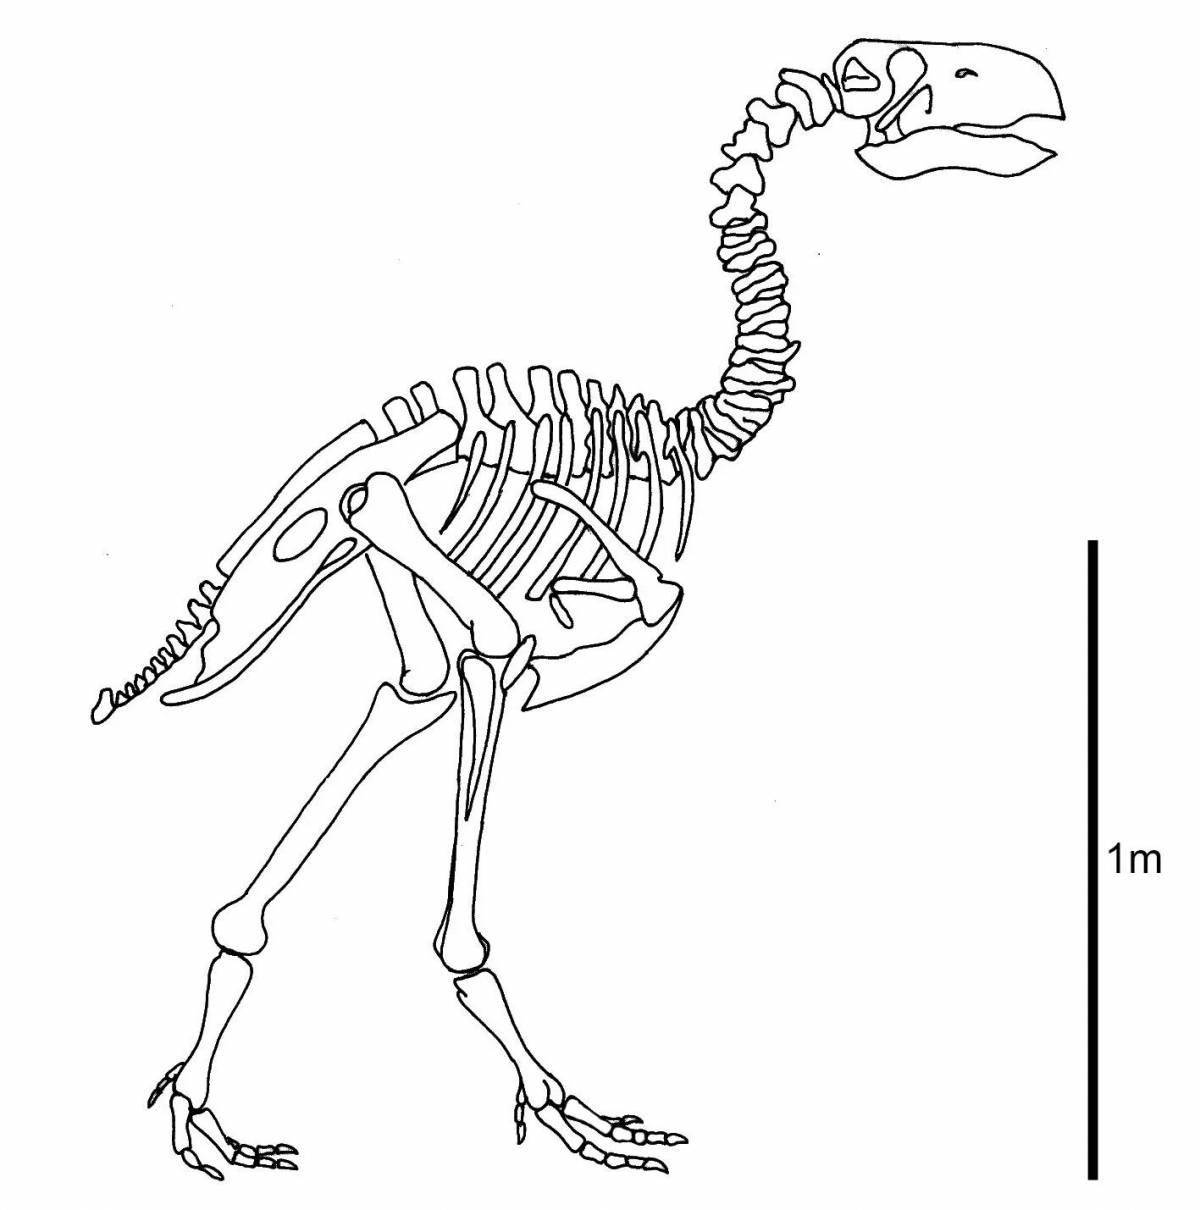 Impressive dinosaur skeleton coloring book